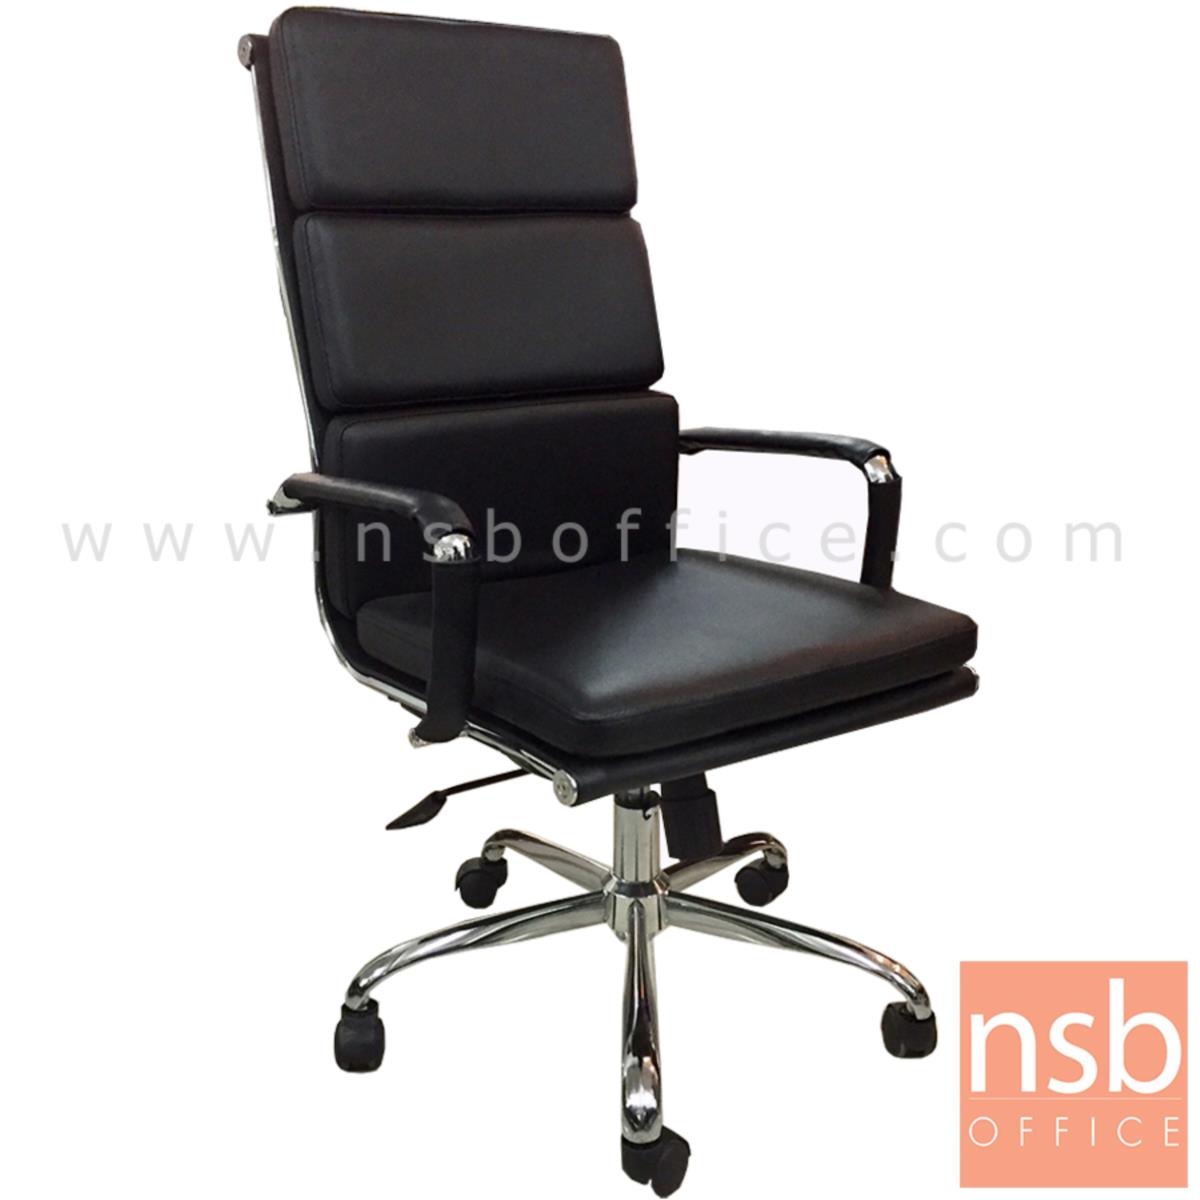 B01A345:เก้าอี้ผู้บริหาร รุ่น Stegien (สเตเจียน)  โช๊คแก๊ส มีก้อนโยก ขาเหล็กชุบโครเมี่ยม